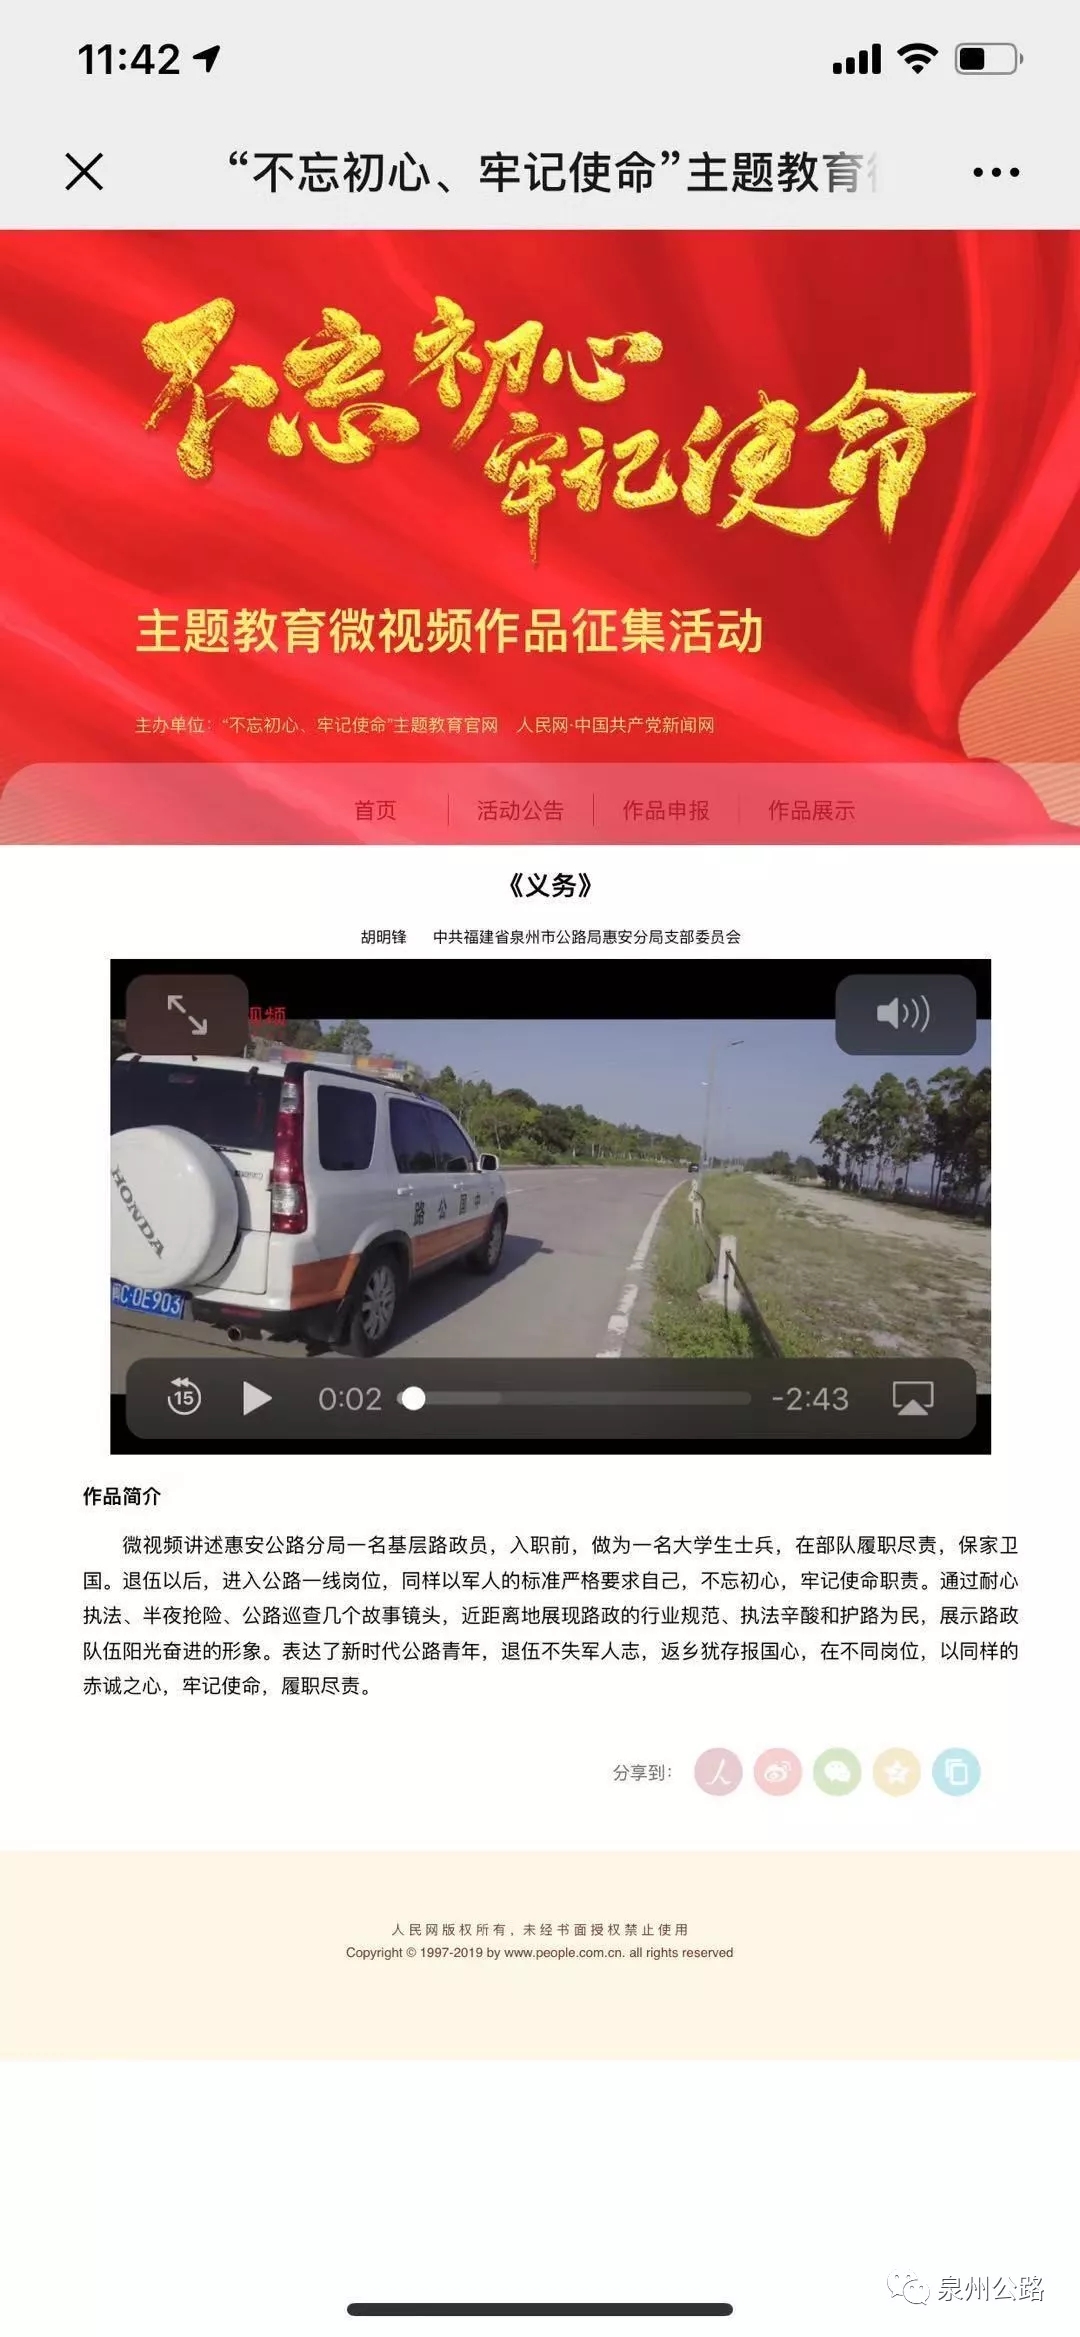 惠安公路分局自创微视频作品入围